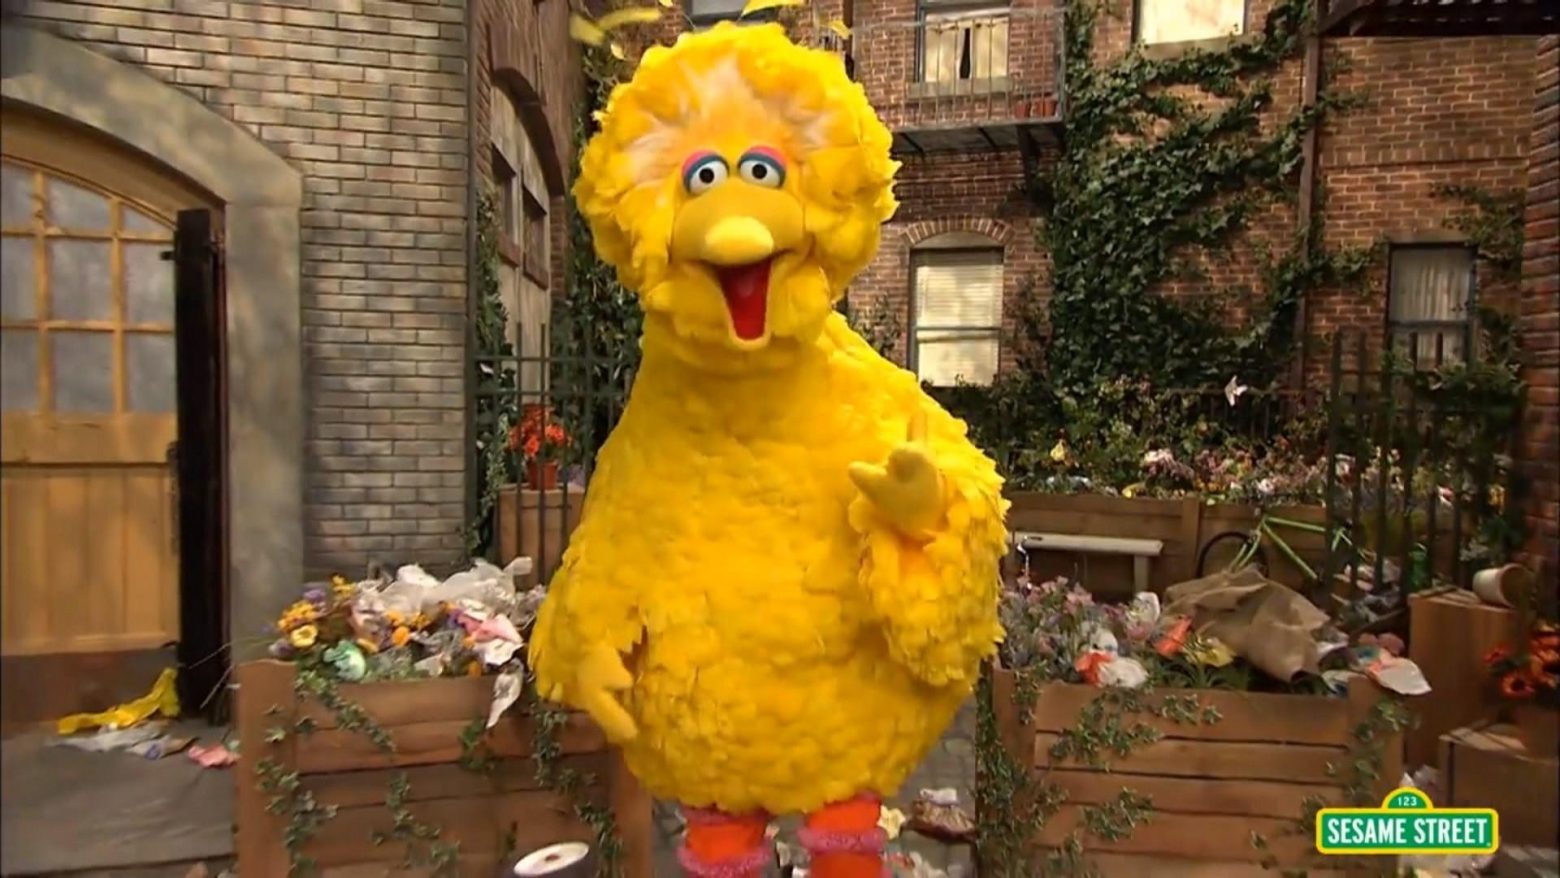 Ο Big Bird της Sesame Street εμβολιάστηκε και προκάλεσε τριγμούς στις ΗΠΑ - Τι θέση πήρε το Τζο Μπάιντεν